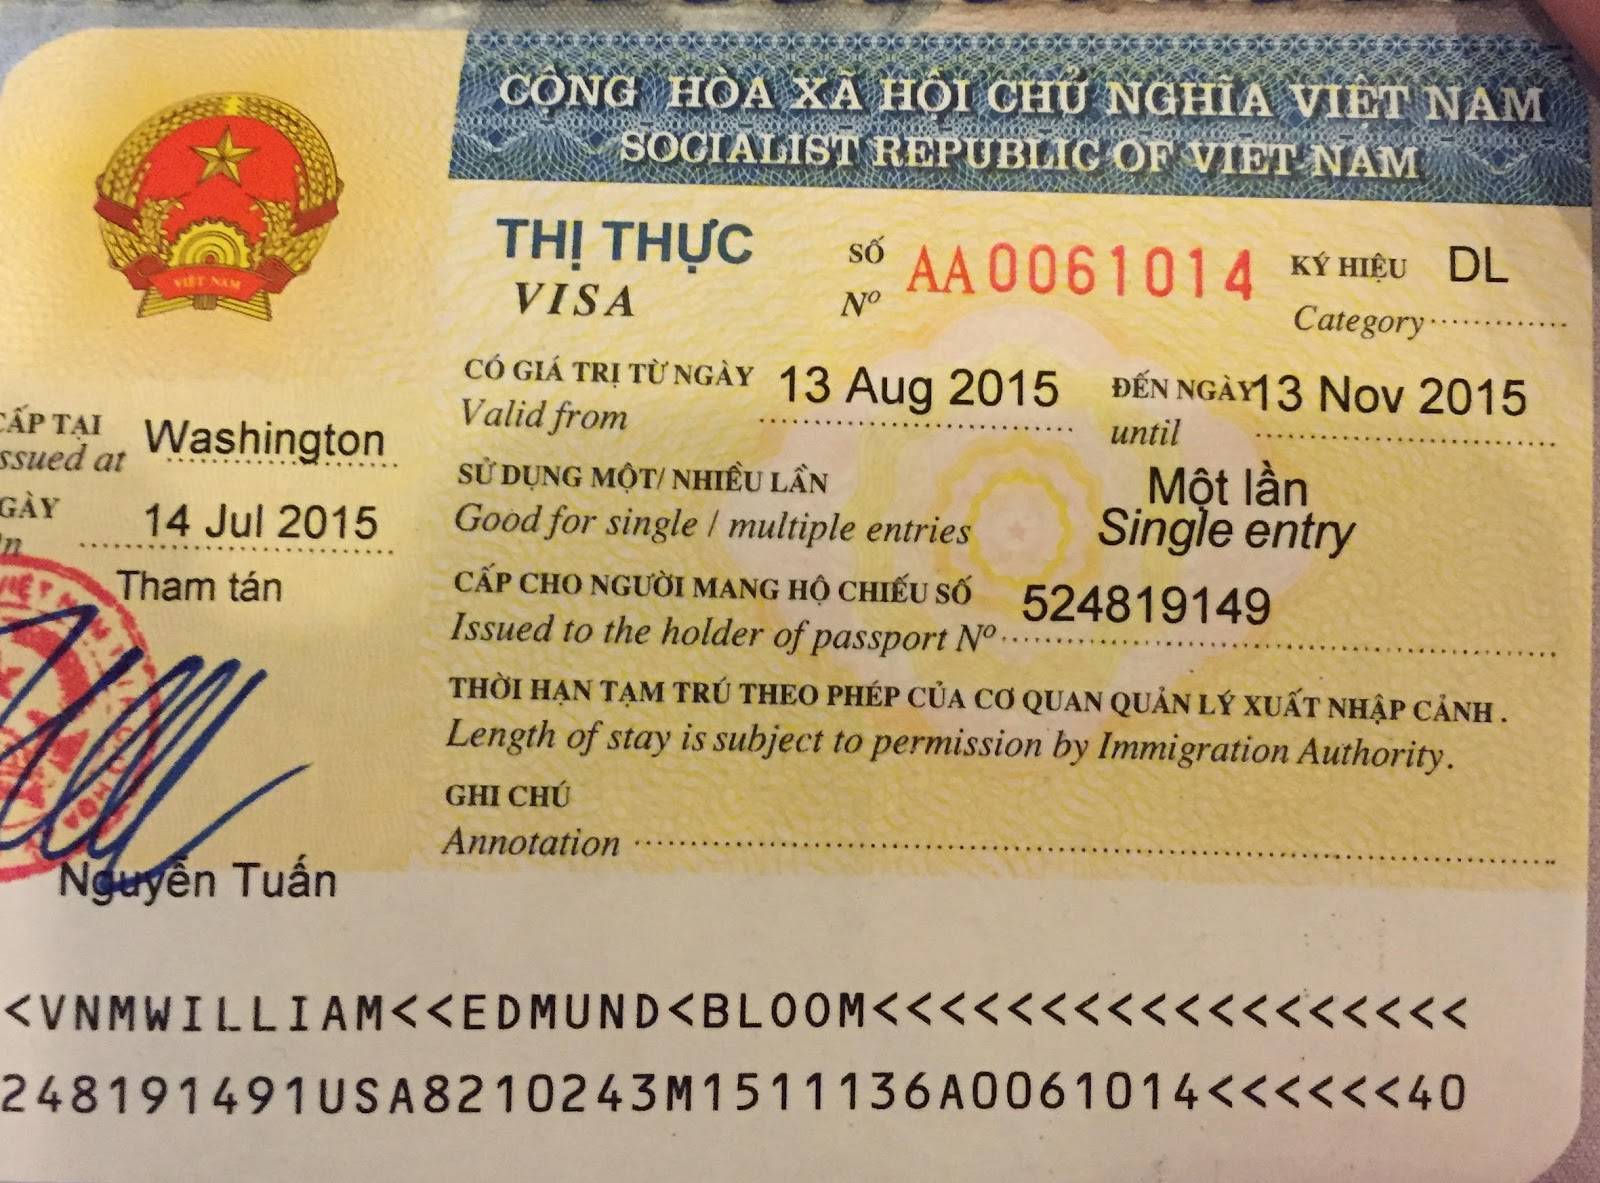 Виза во вьетнам для россиян, правила и сроки безвизового въезда